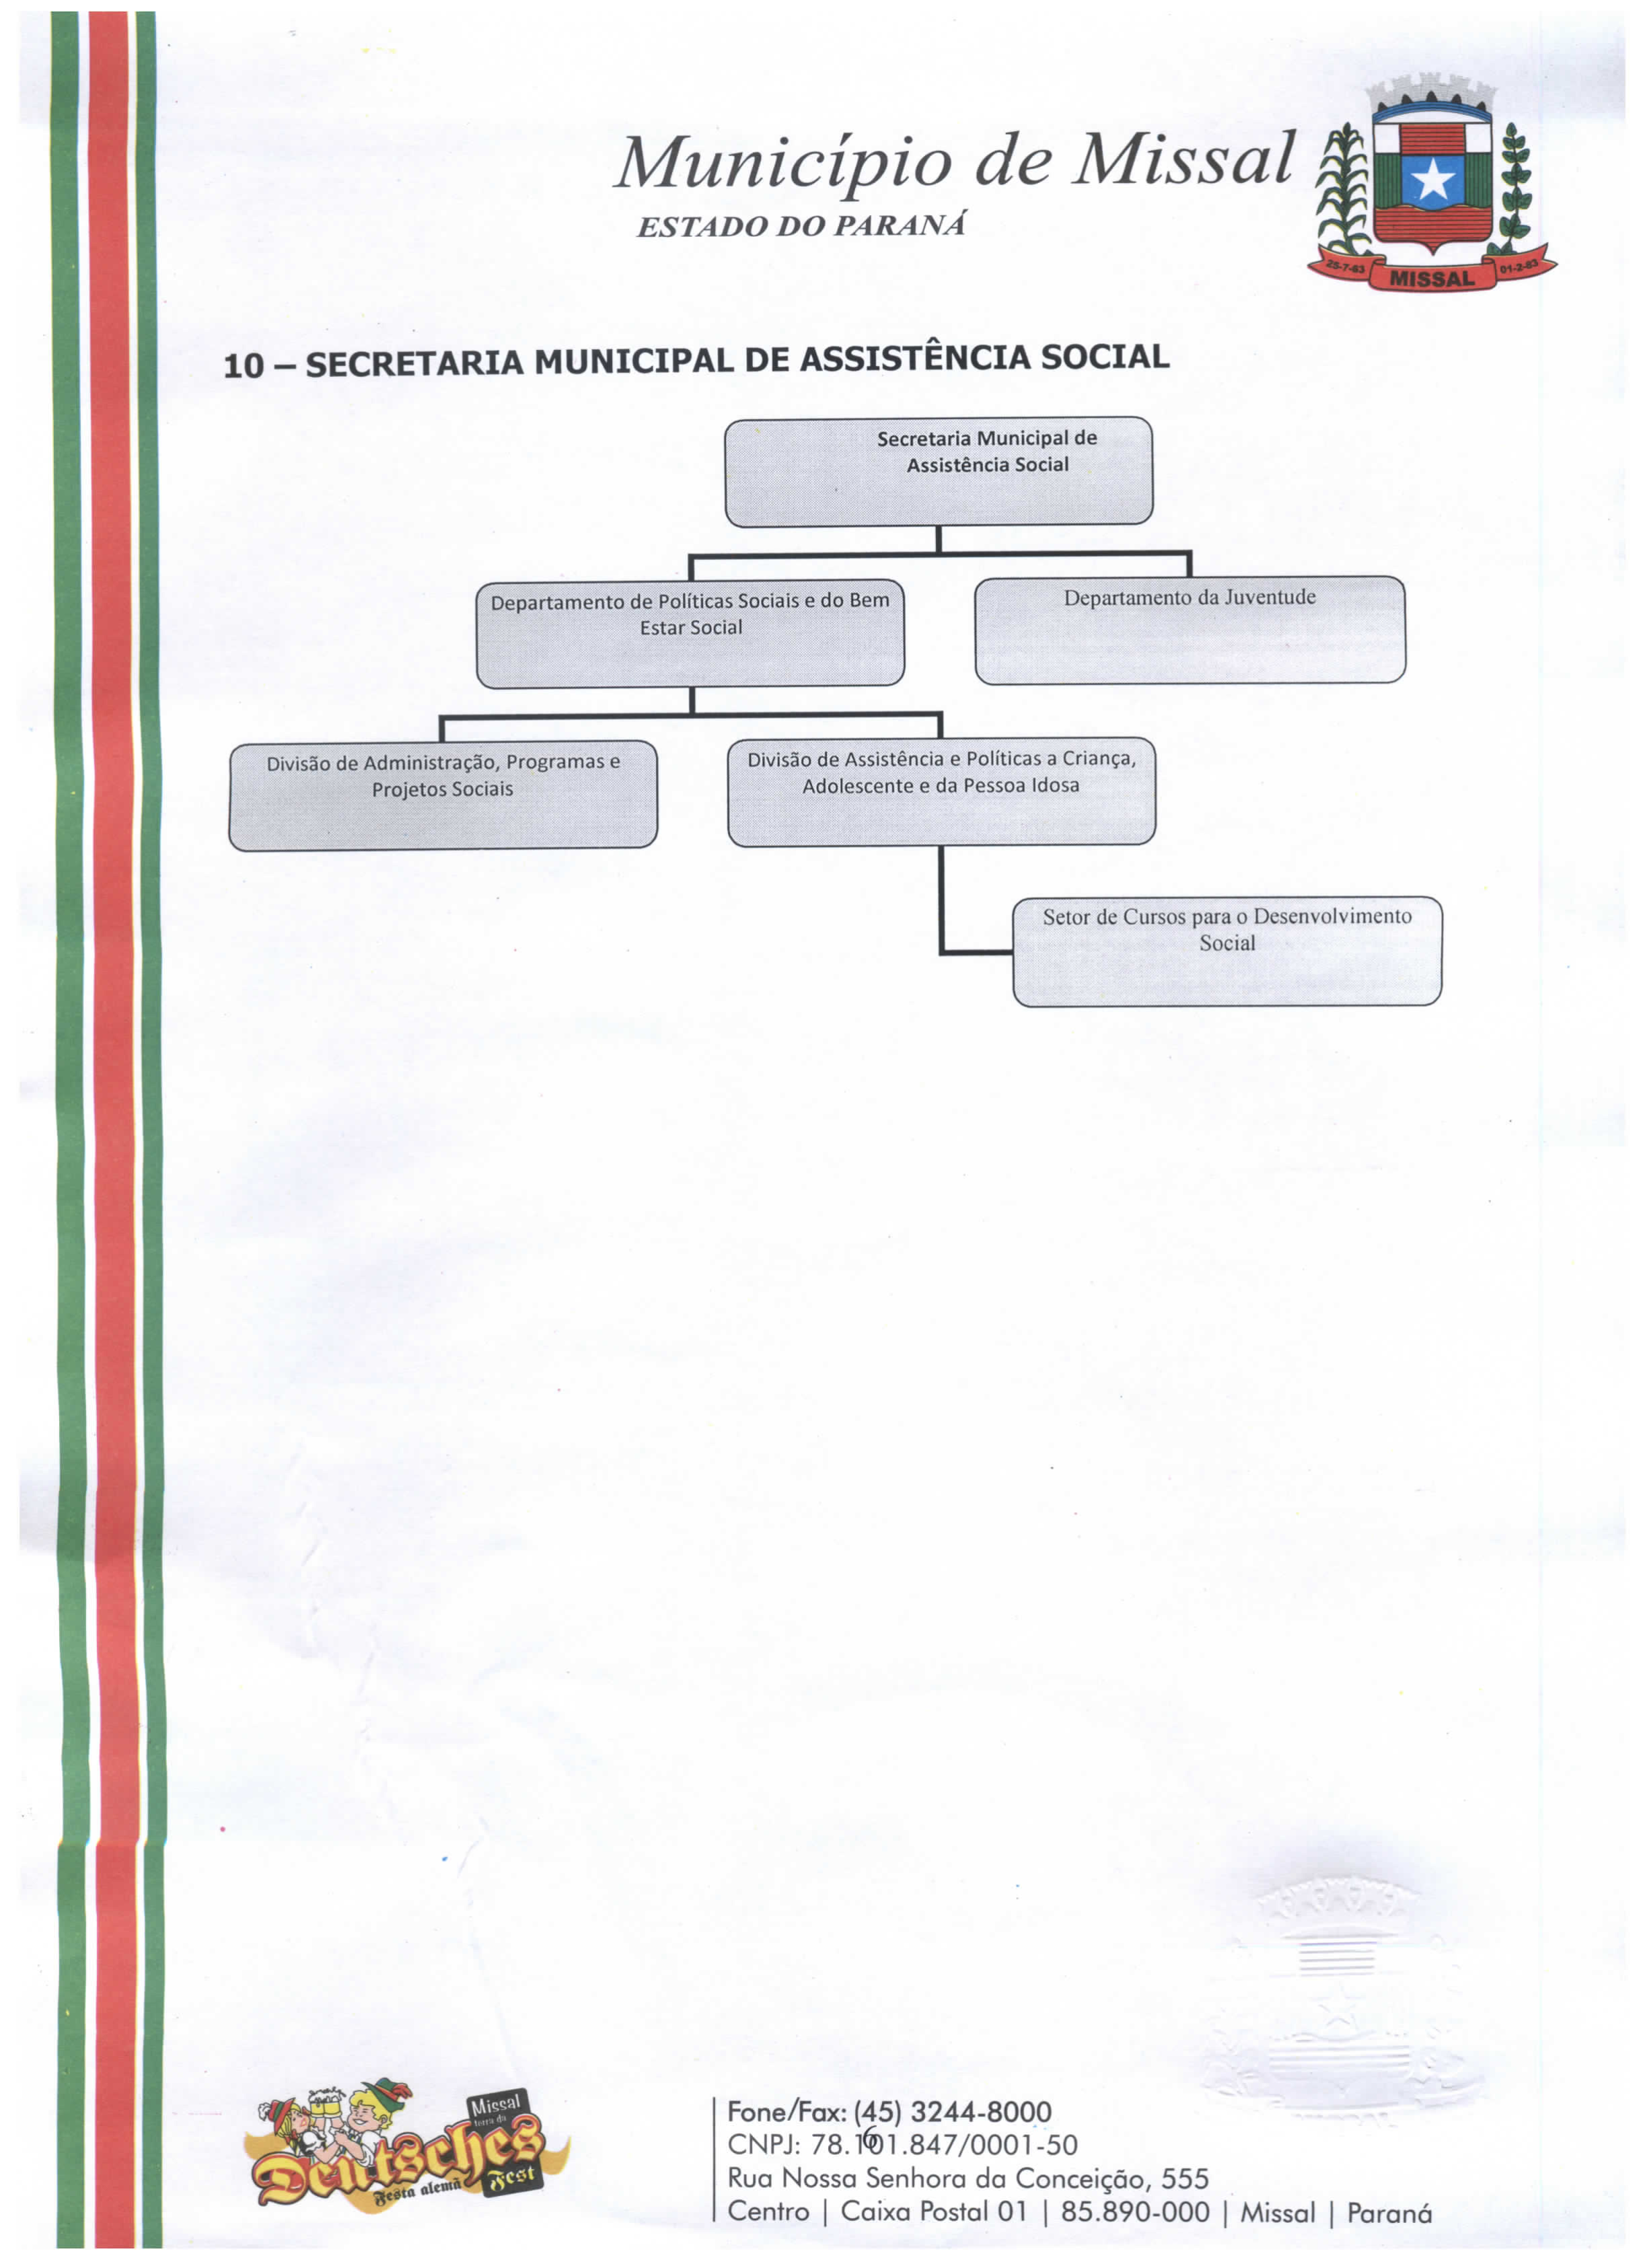 Organograma da secretaria municipal de Assistência Social